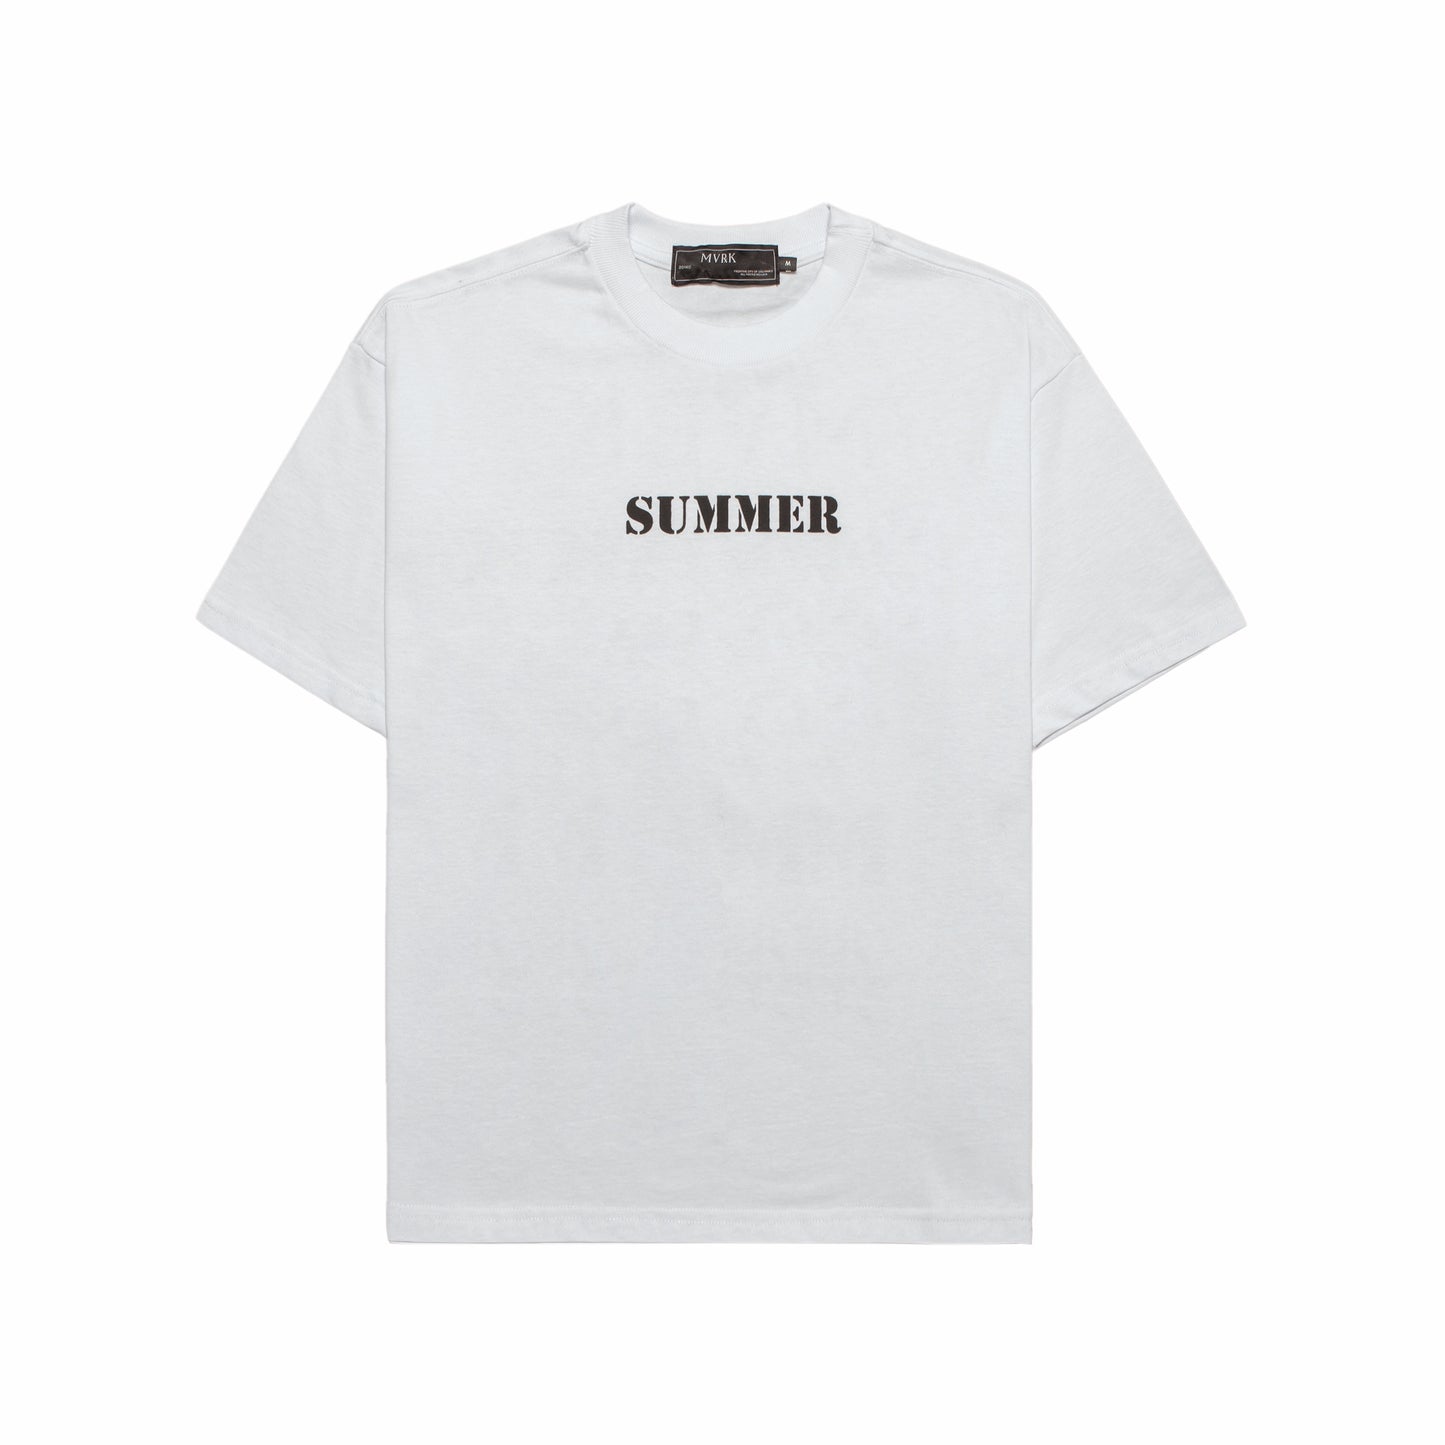 Camiseta Summer MVRK